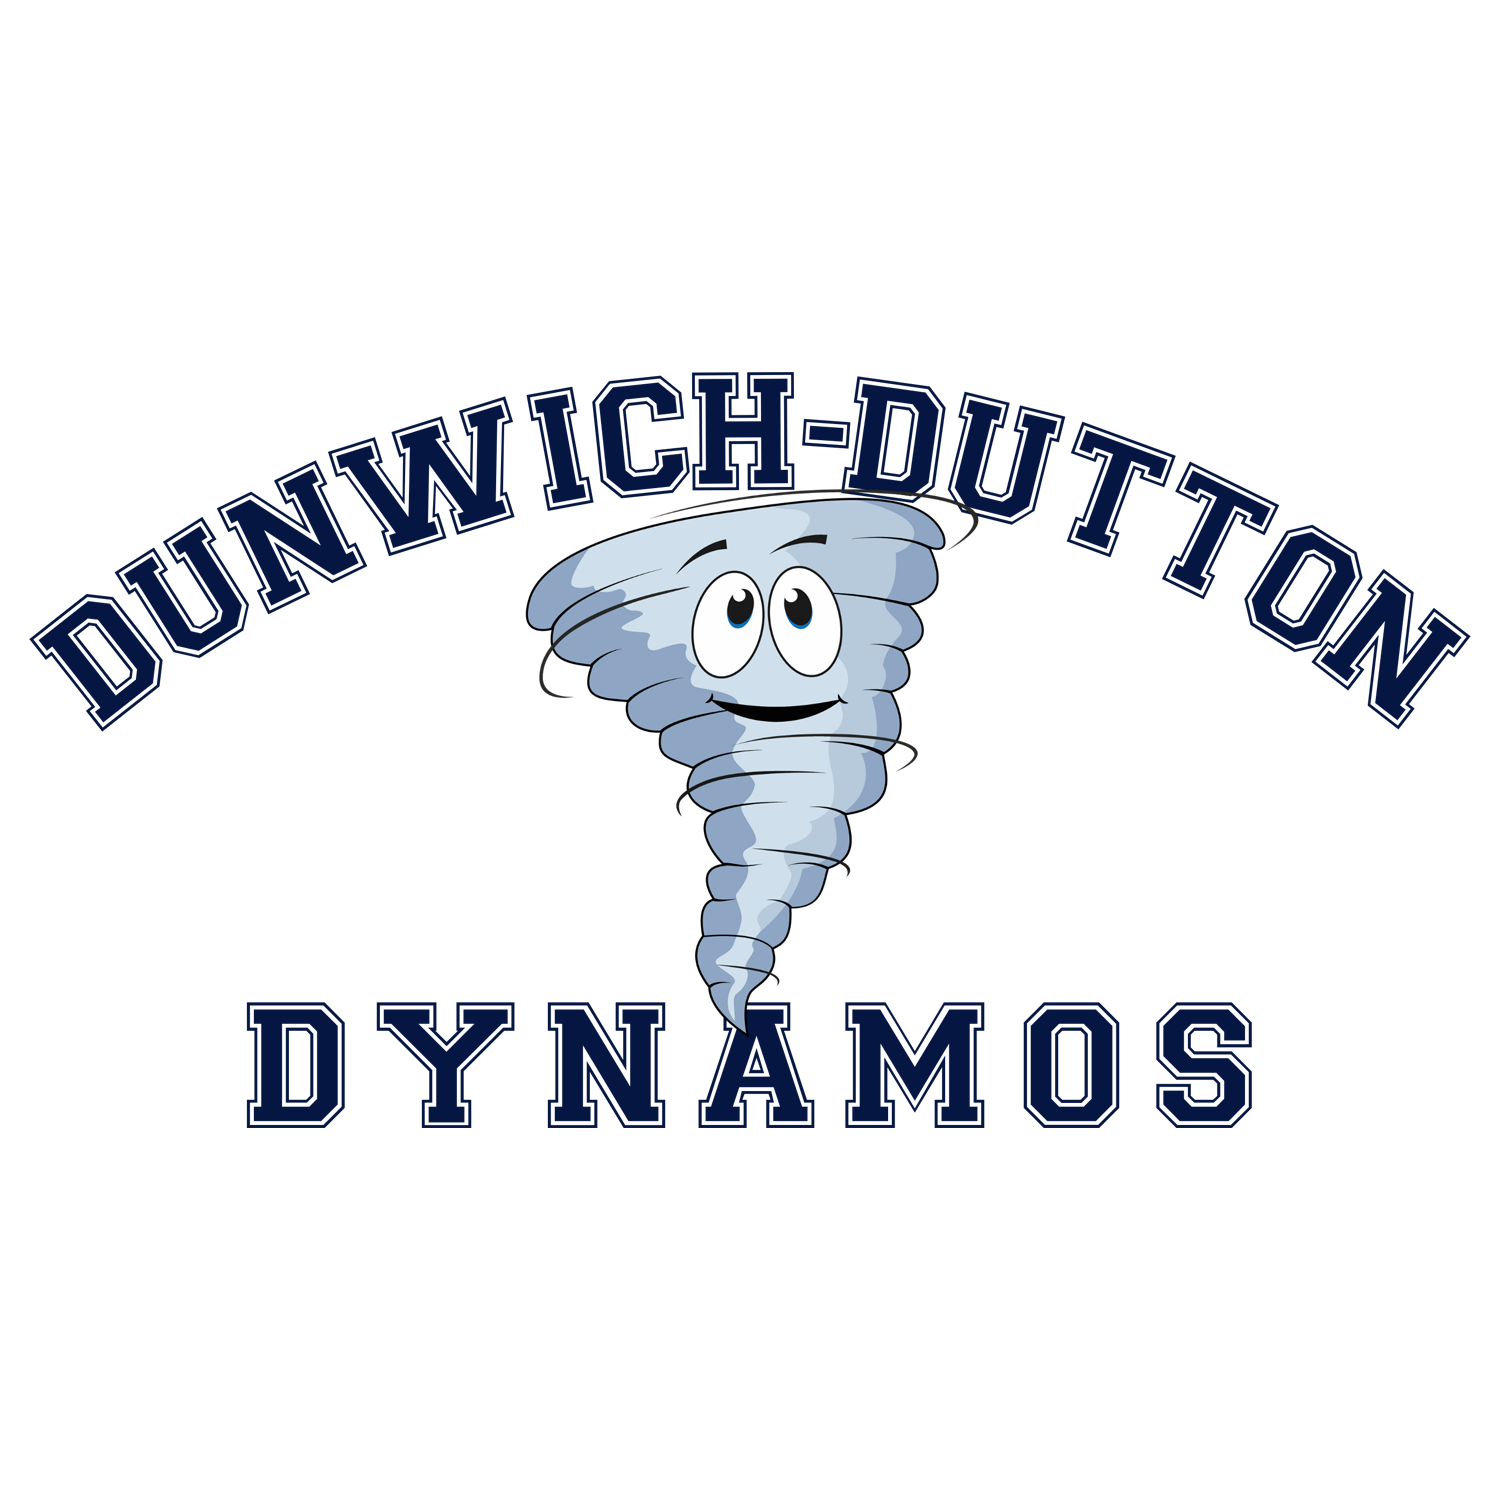 DUNWICH-DUTTON DYNAMOS